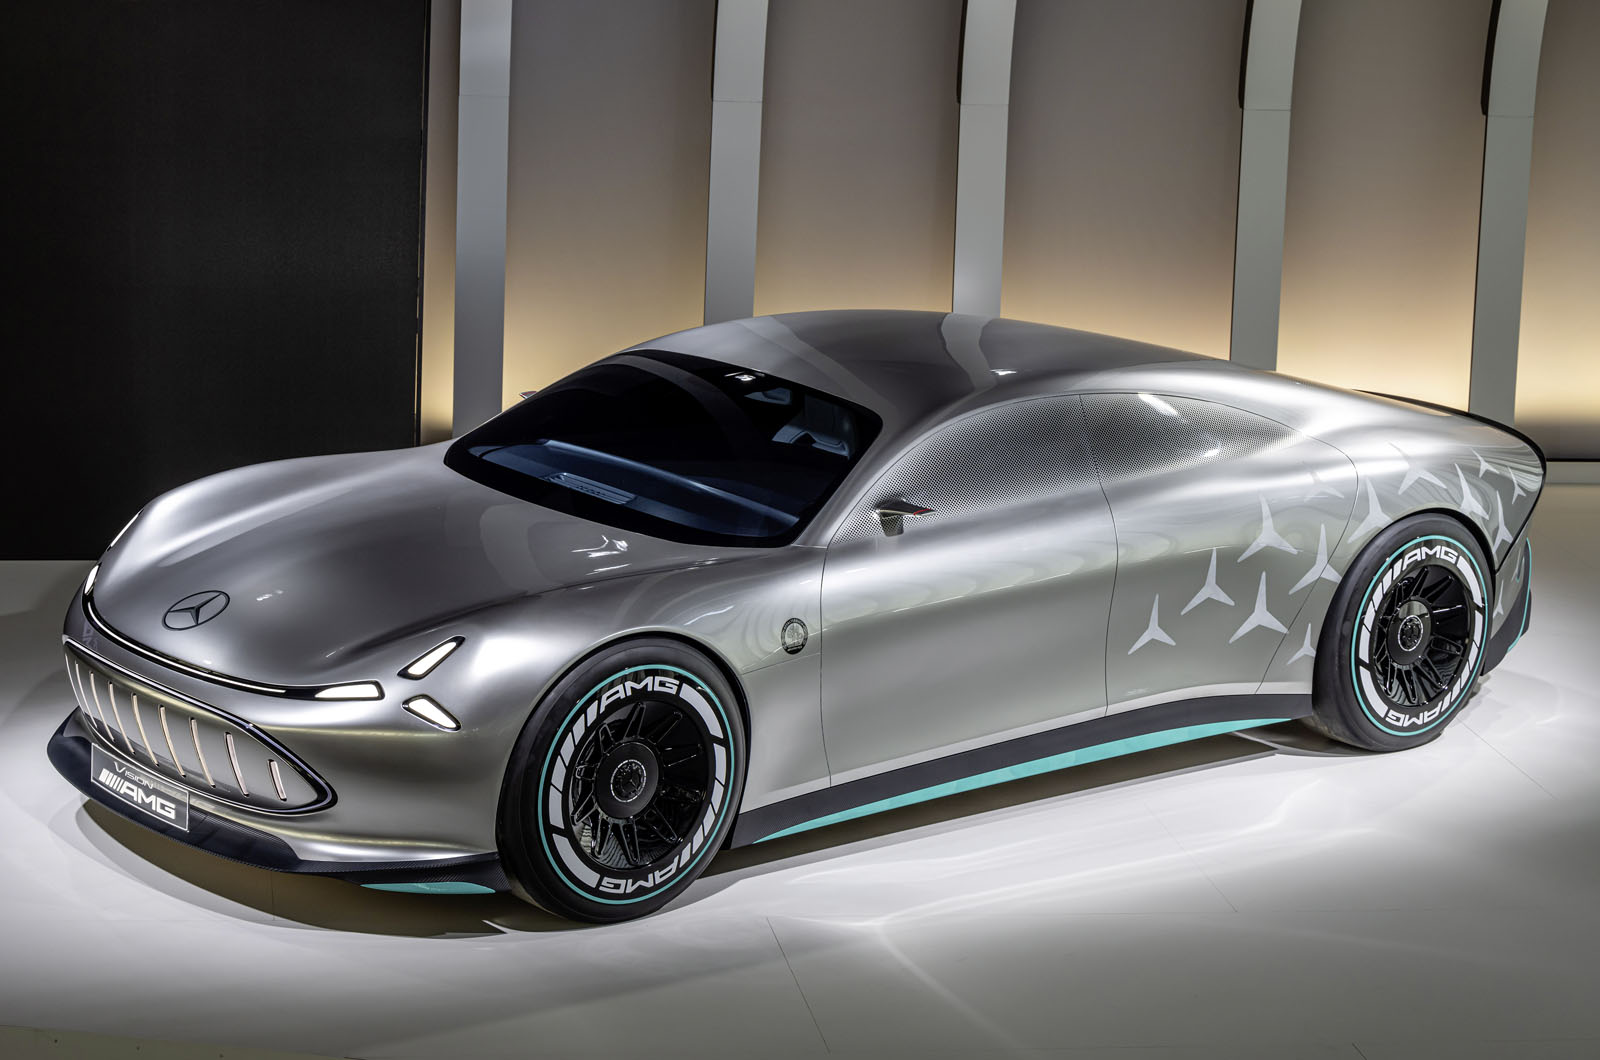 Der Sportwagen Mercedes-AMG EV 2025 soll dem Porsche Taycan Konkurrenz machen